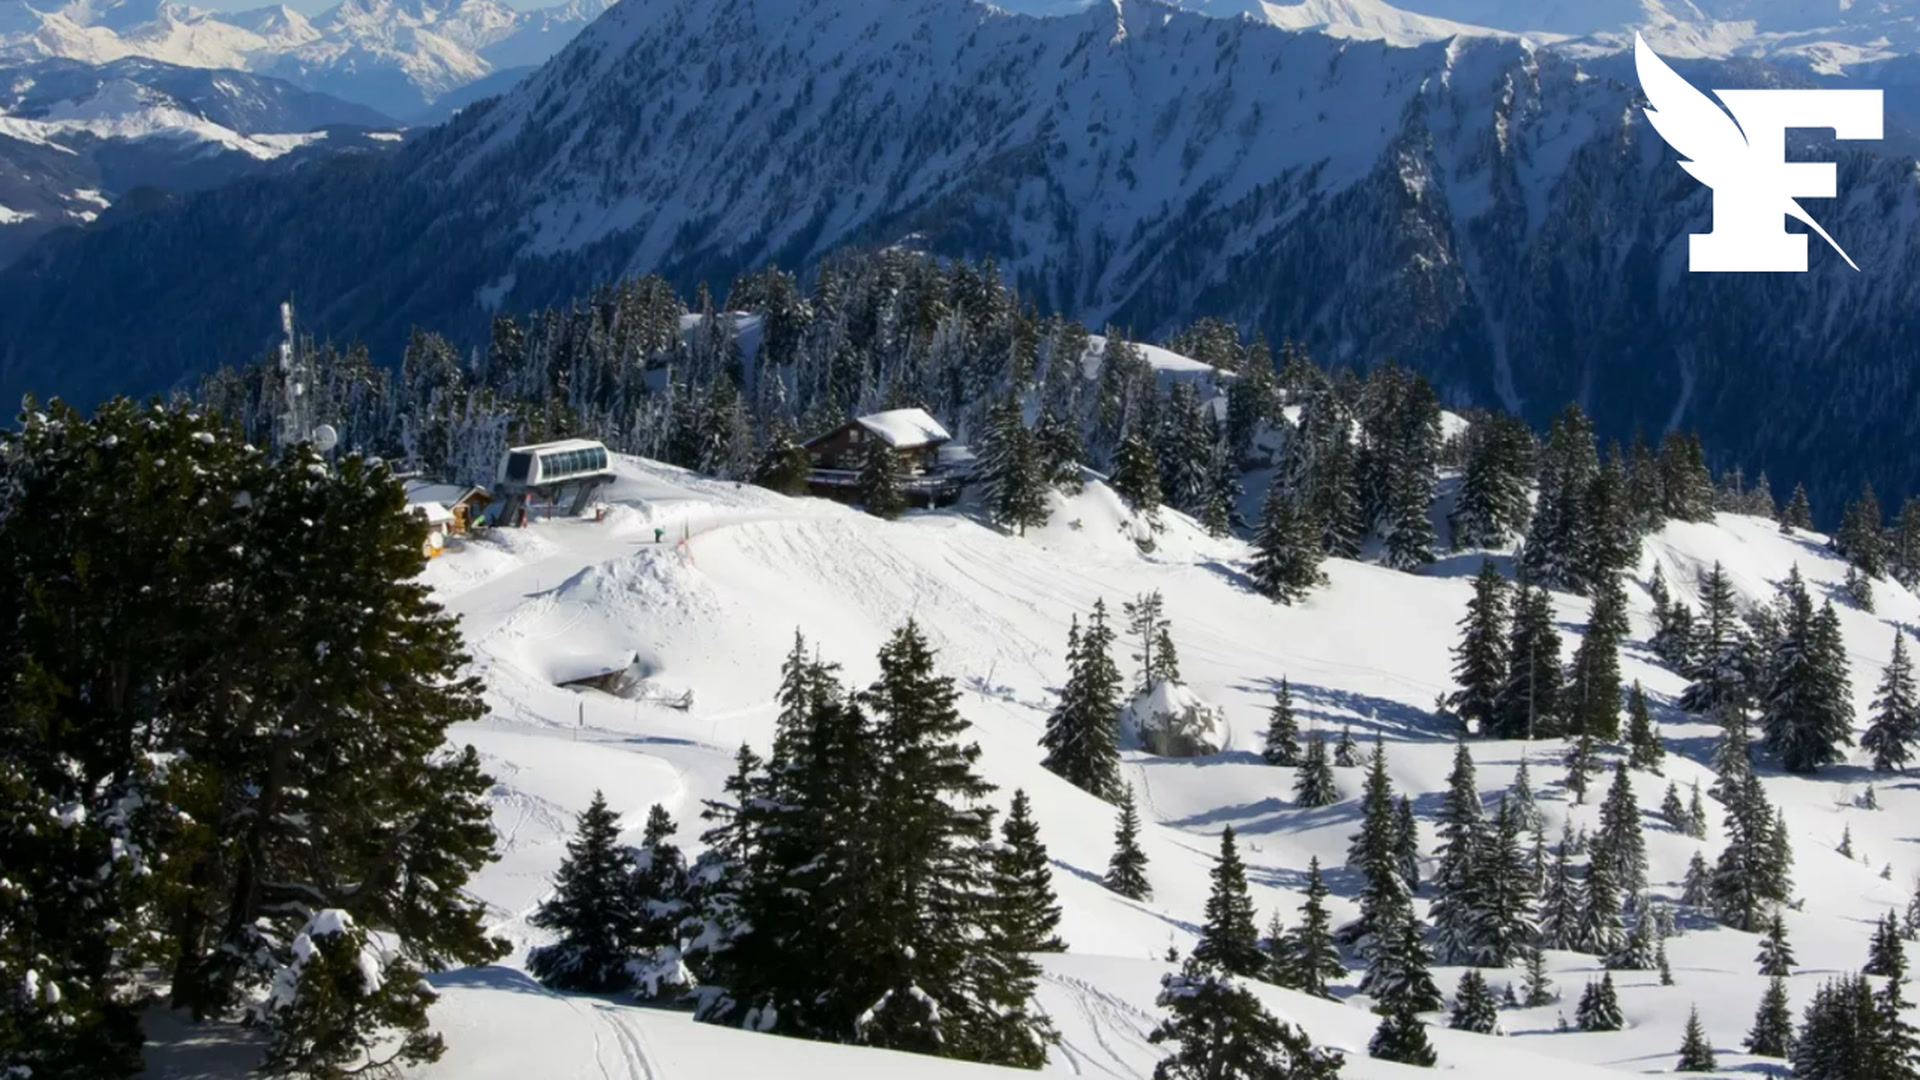 Ski alpin : Le géant hommes annulé à Sölden repris par Aspen - Eurosport